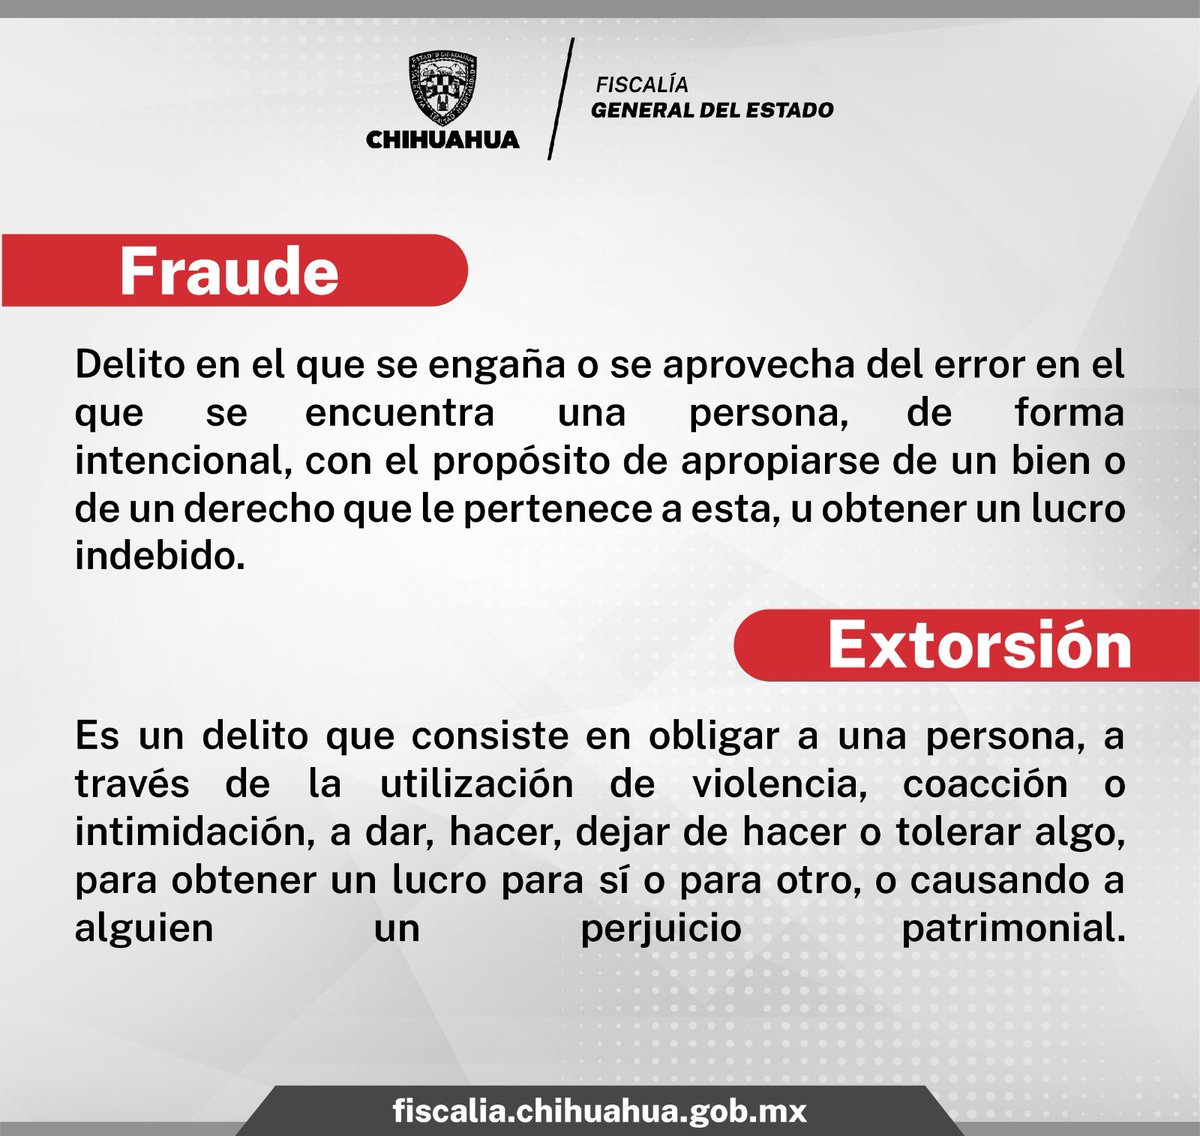 Si ya fuiste victima de fraude o extorsión puedes denunciar a nuestra línea directa, accede a nuestra página para conocer más informació. fiscalia.chihuahua.gob.mx/alerta-cuidate…